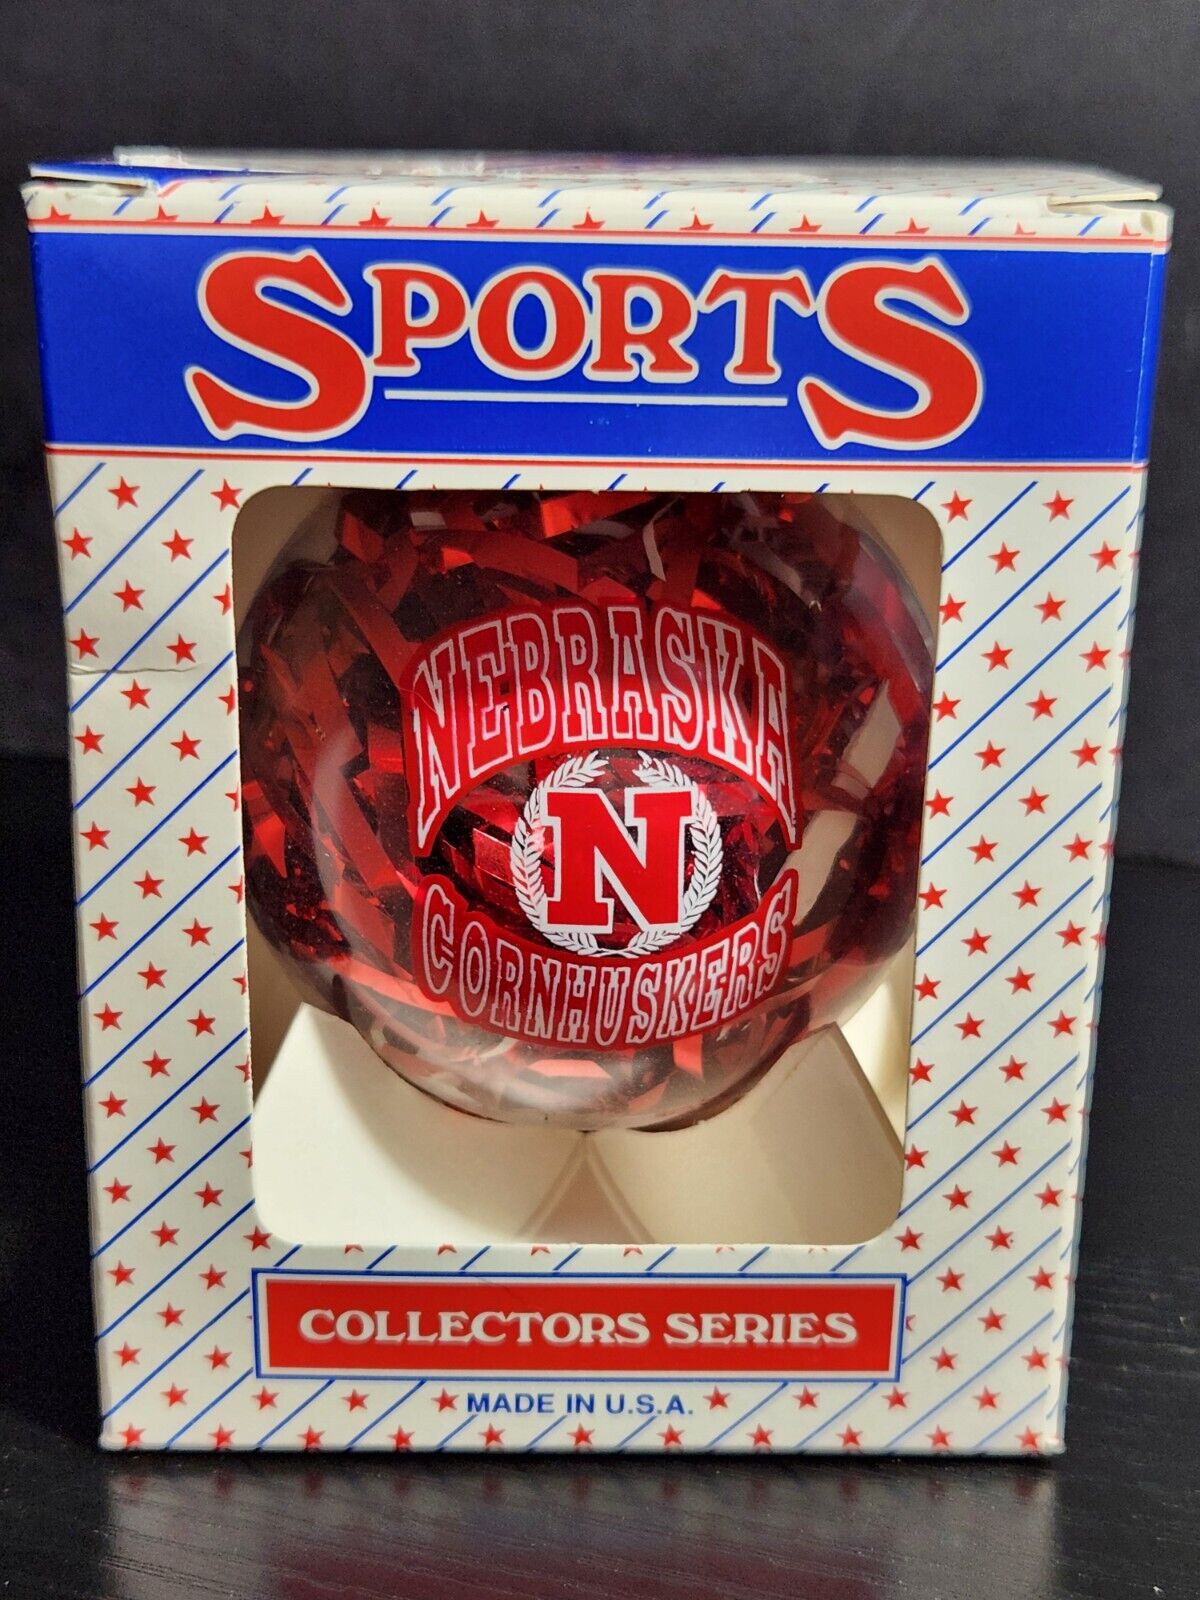 Nebraska Cornhuskers Sports Collectors Series ornament